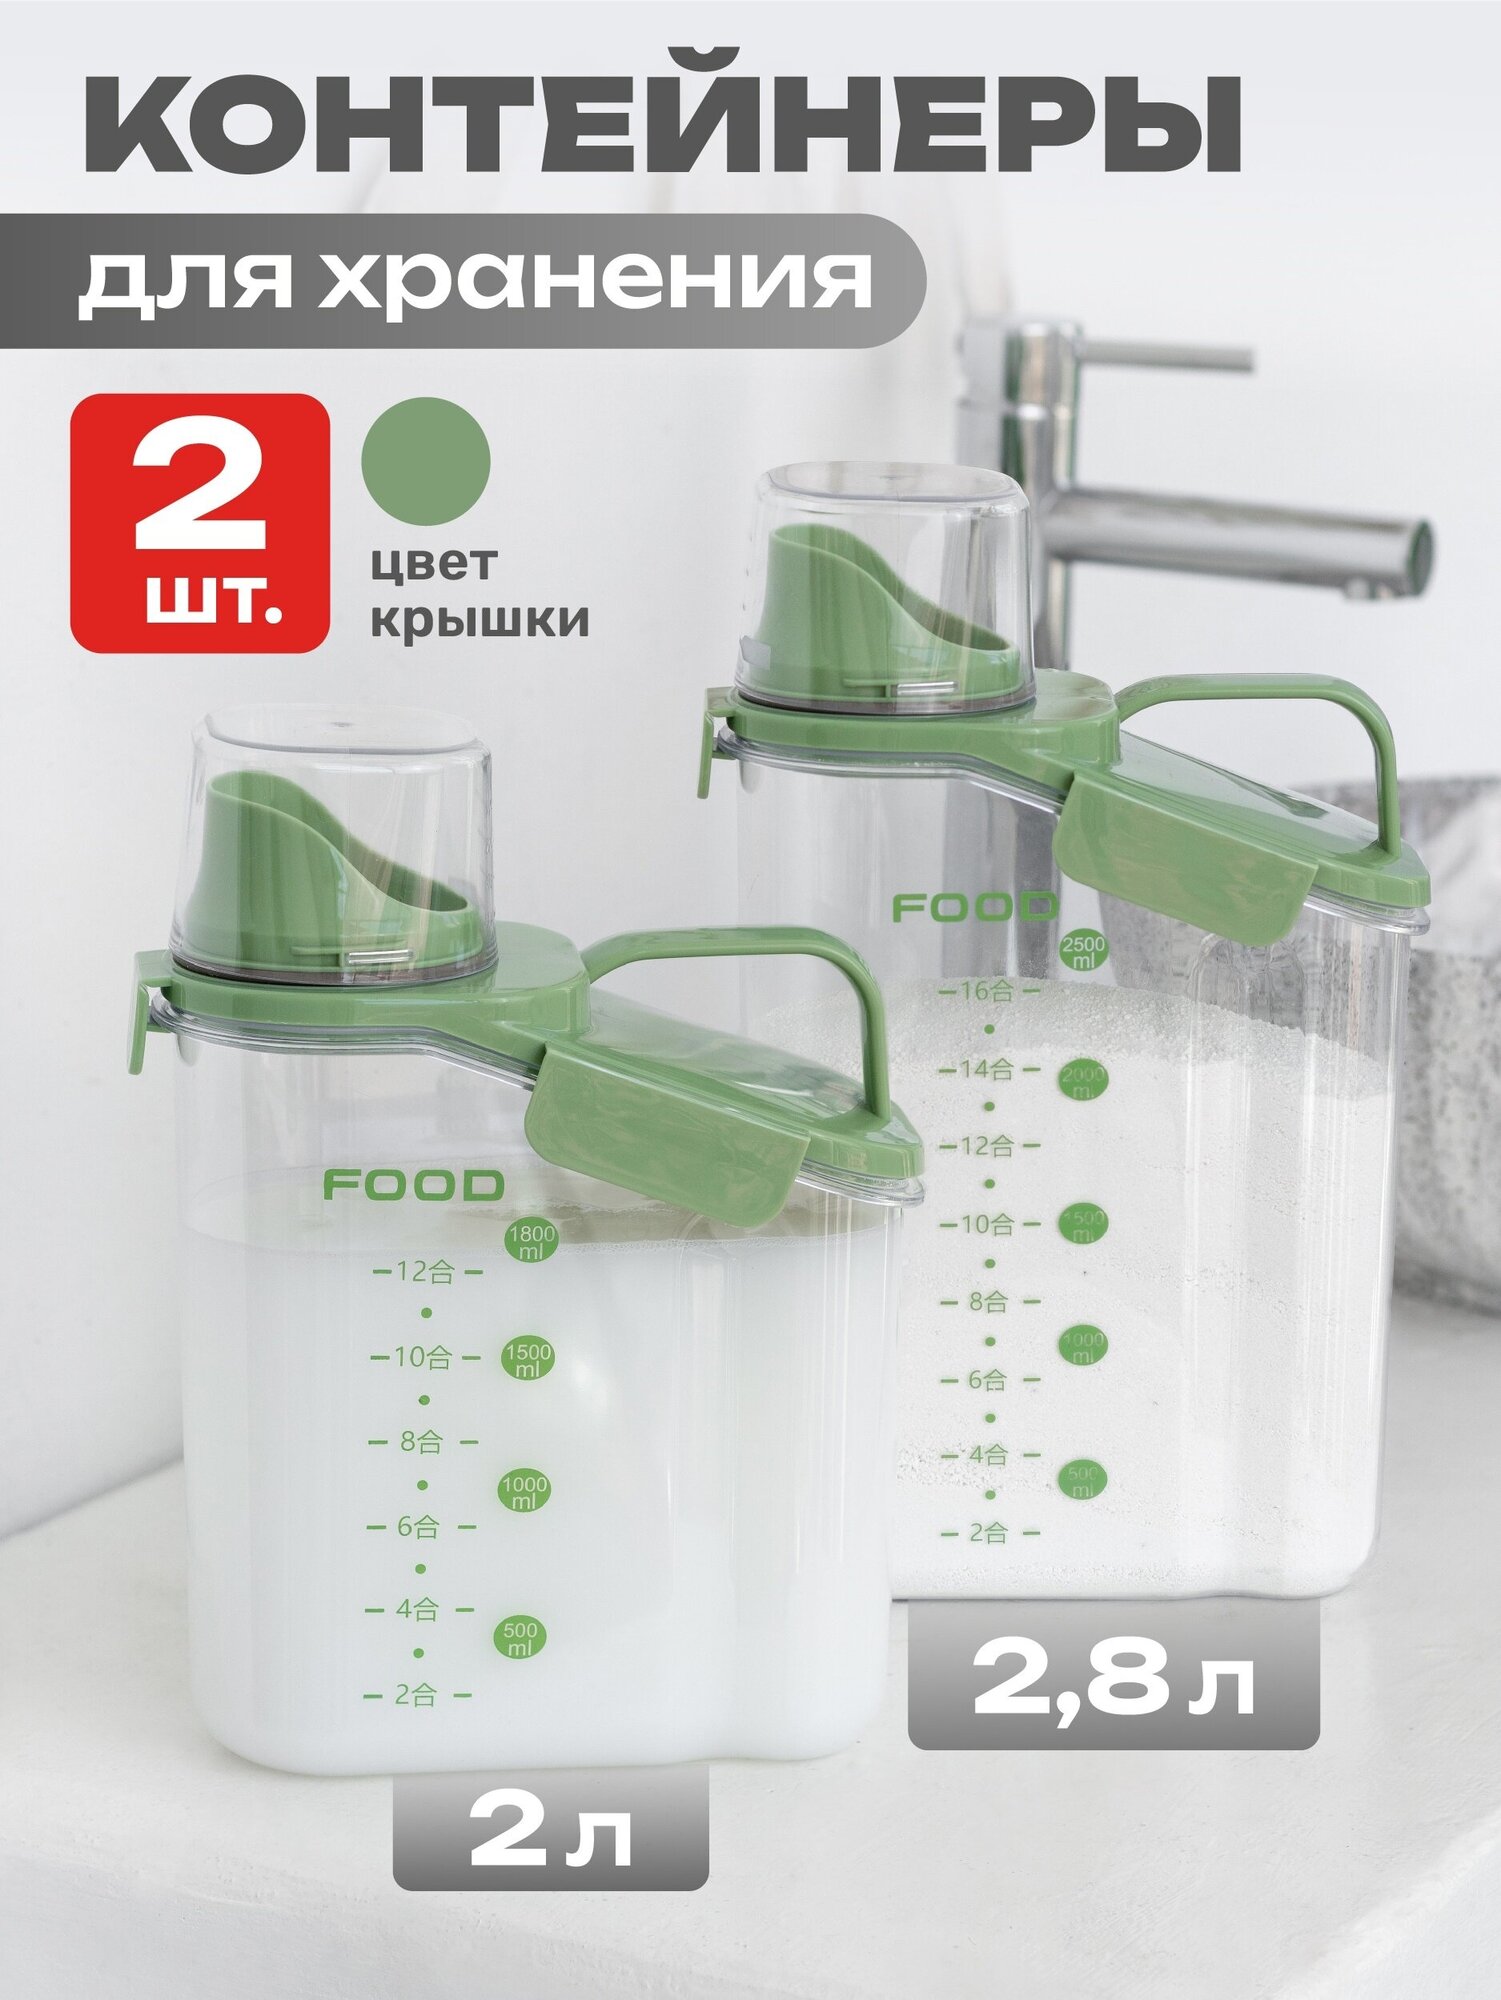 Контейнер для порошка стирального и сыпучих продуктов зеленый 2.0/2.8л